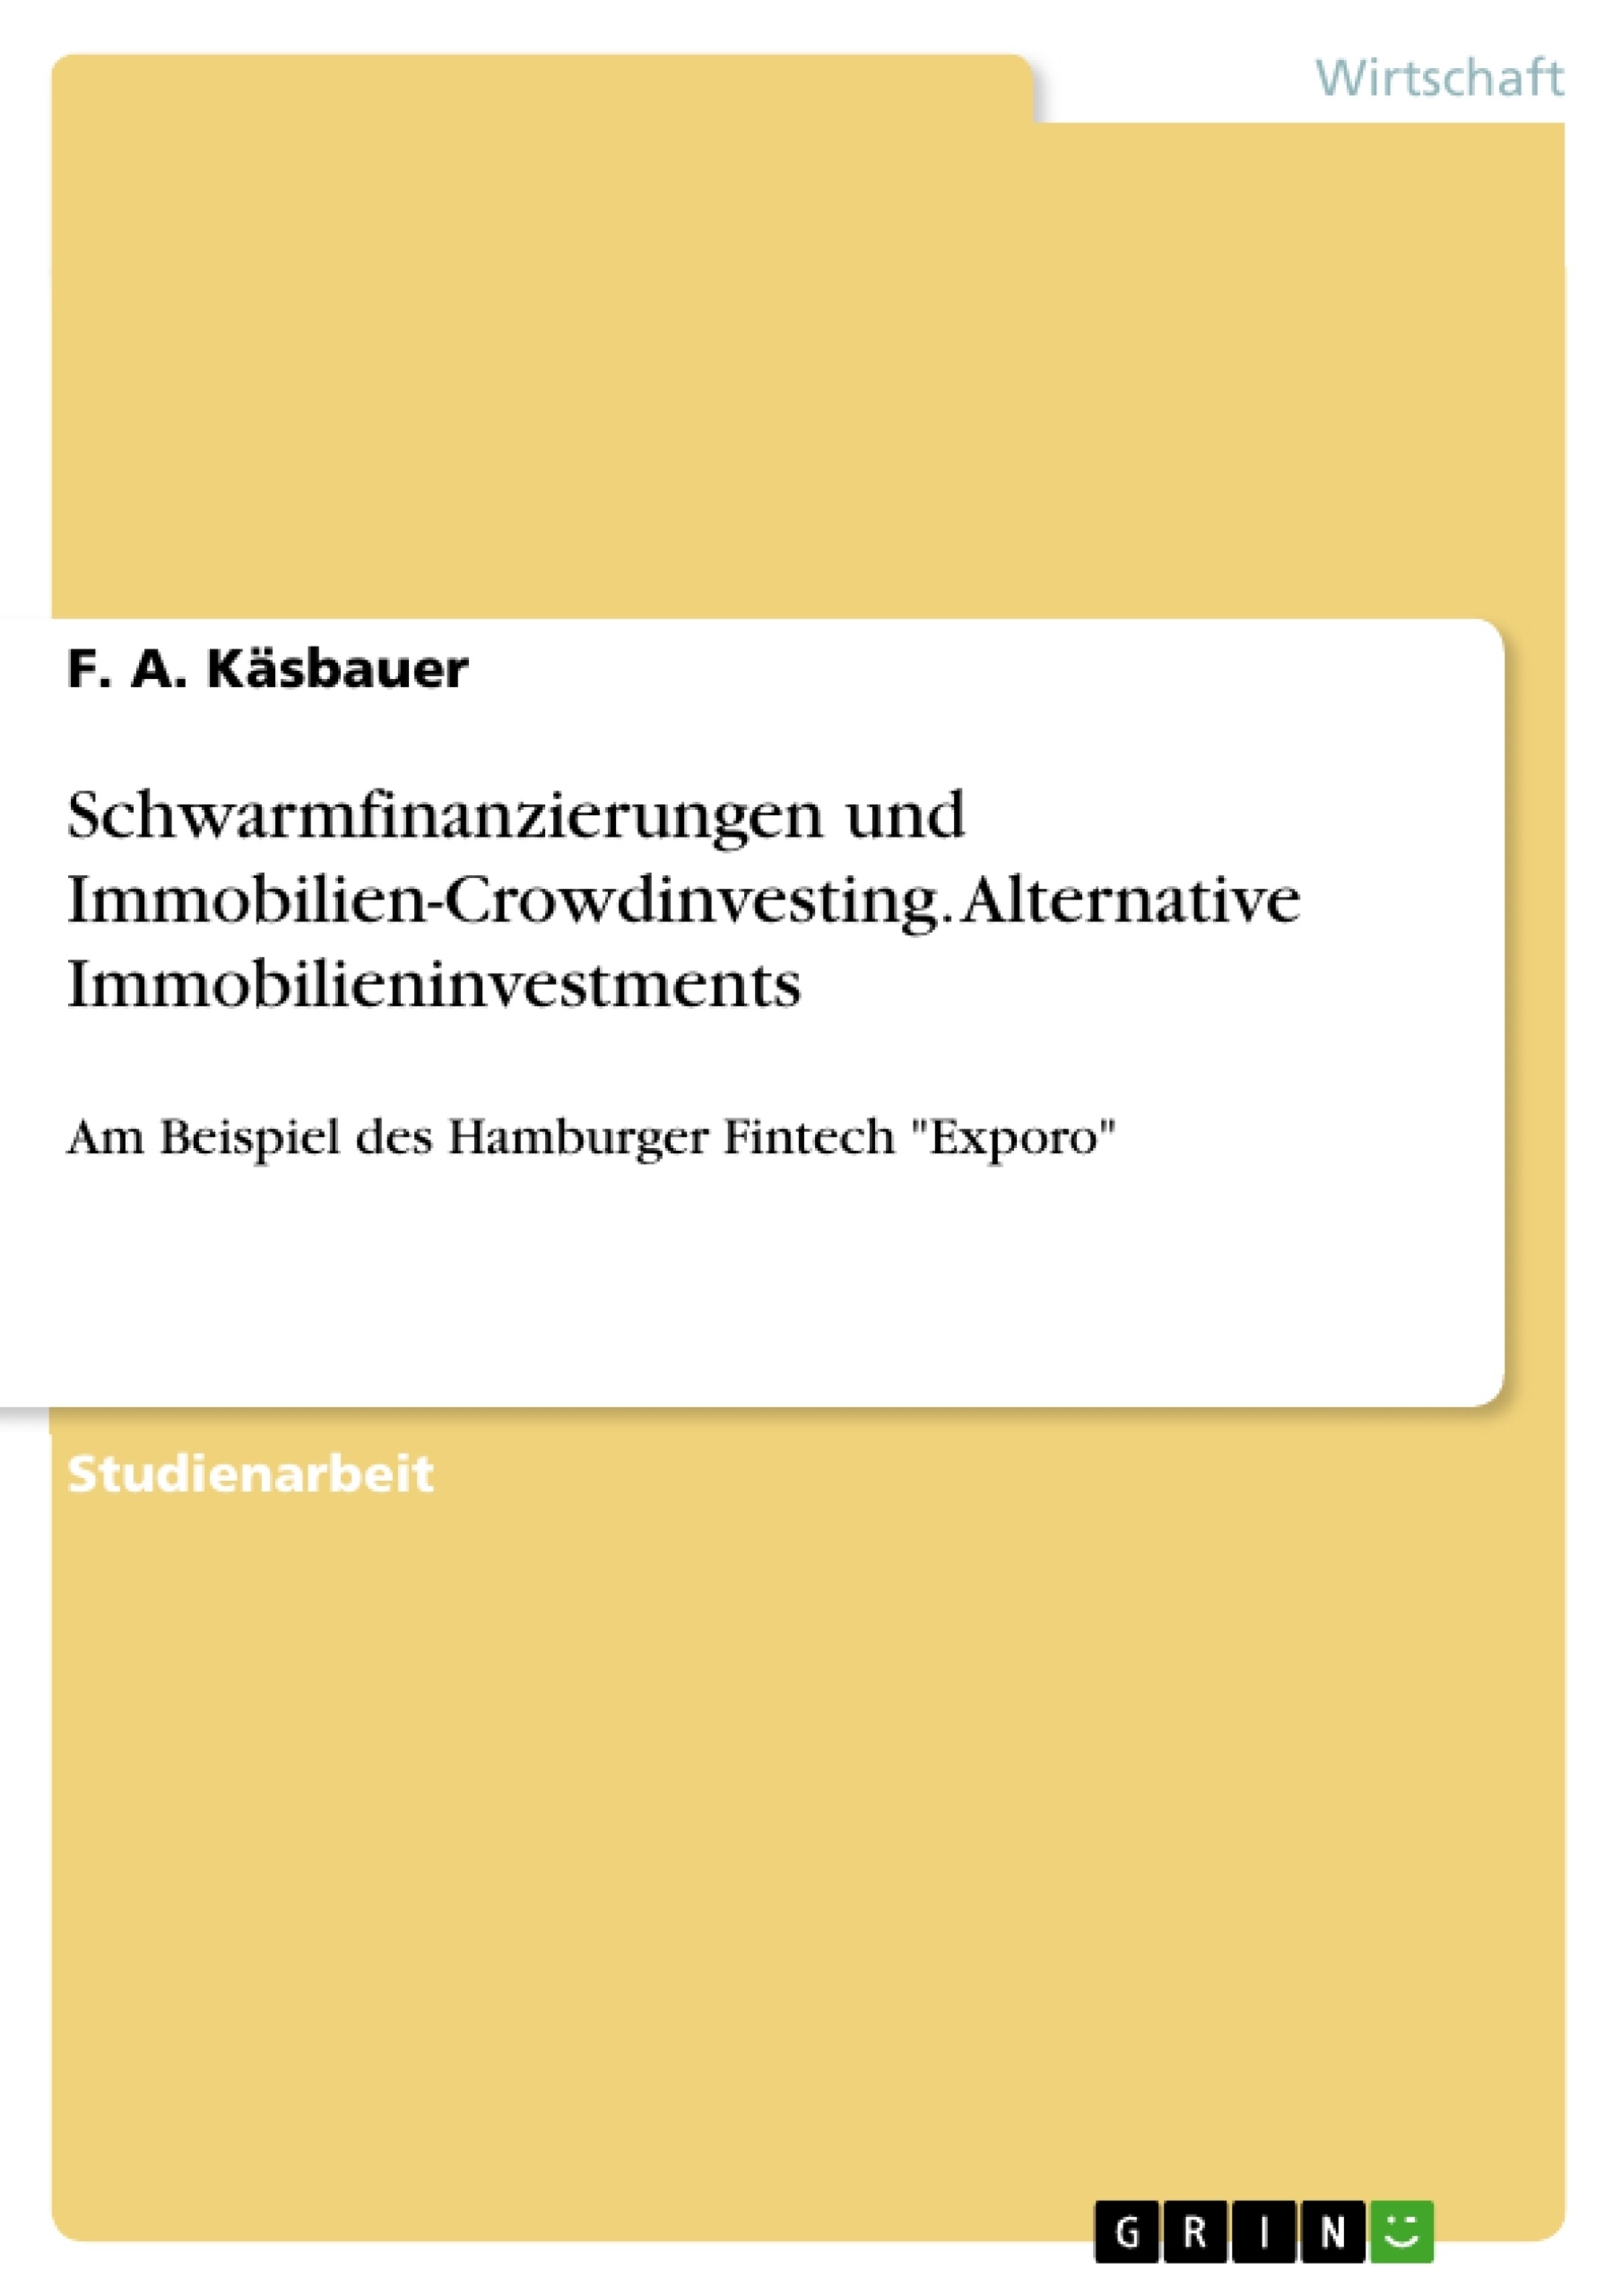 Título: Schwarmfinanzierungen und Immobilien-Crowdinvesting. Alternative Immobilieninvestments